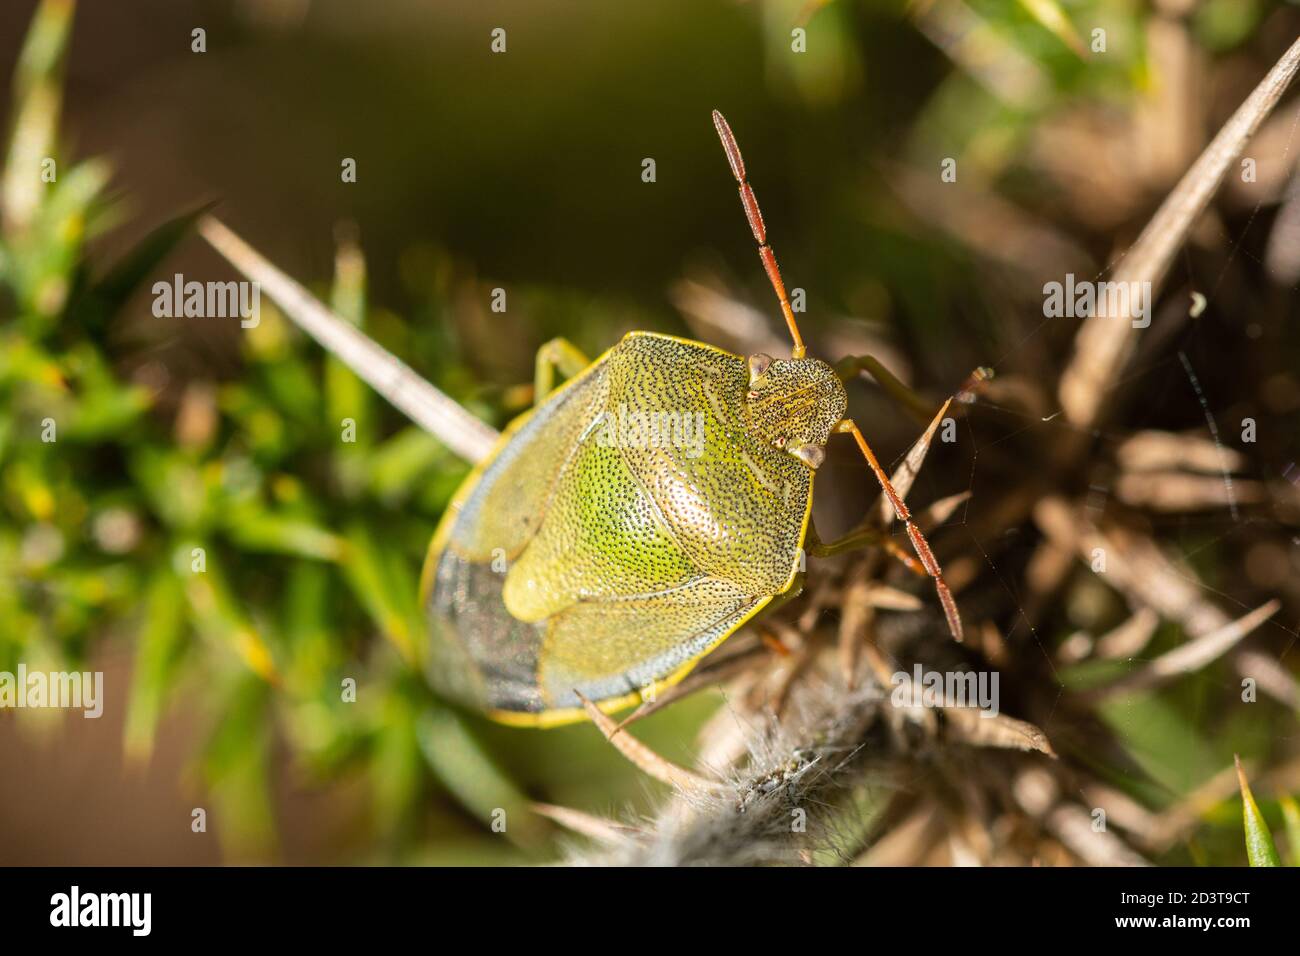 Piezodorus lituratus, l'ajonc Shieldbug (bouclier bug), un insecte dans la famille Pentomidae, sur l'ajonc dans l'habitat des landes, UK Banque D'Images